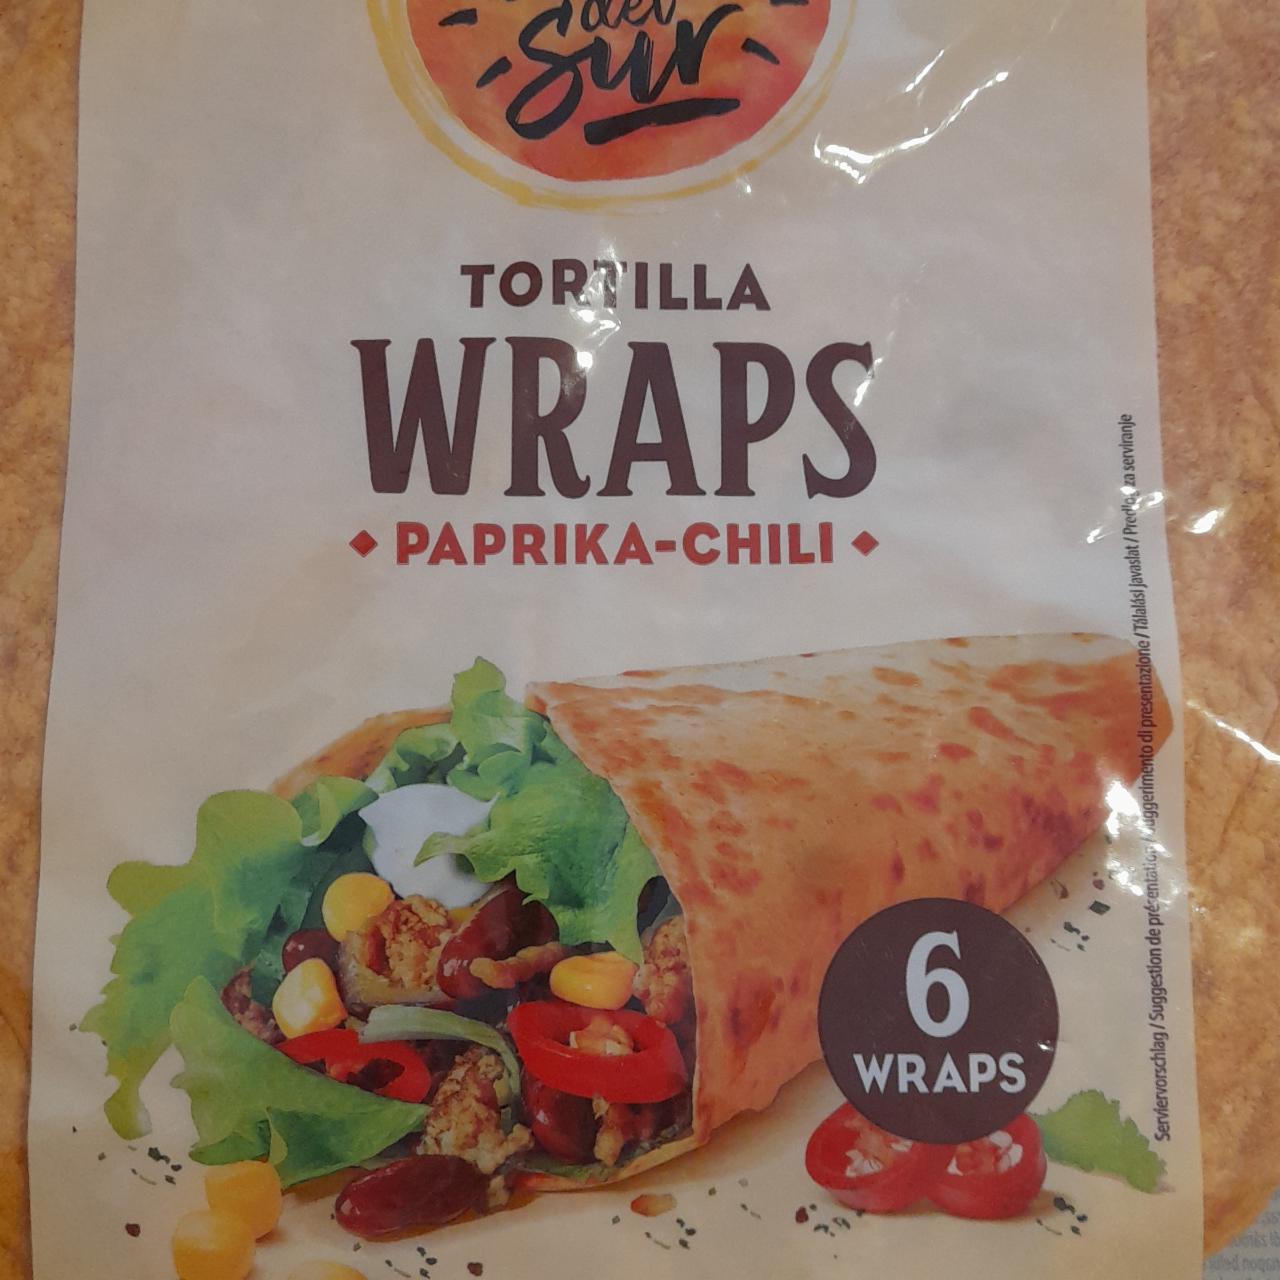 Képek - Tortilla wraps paprika-chilli Tesoros del Sun